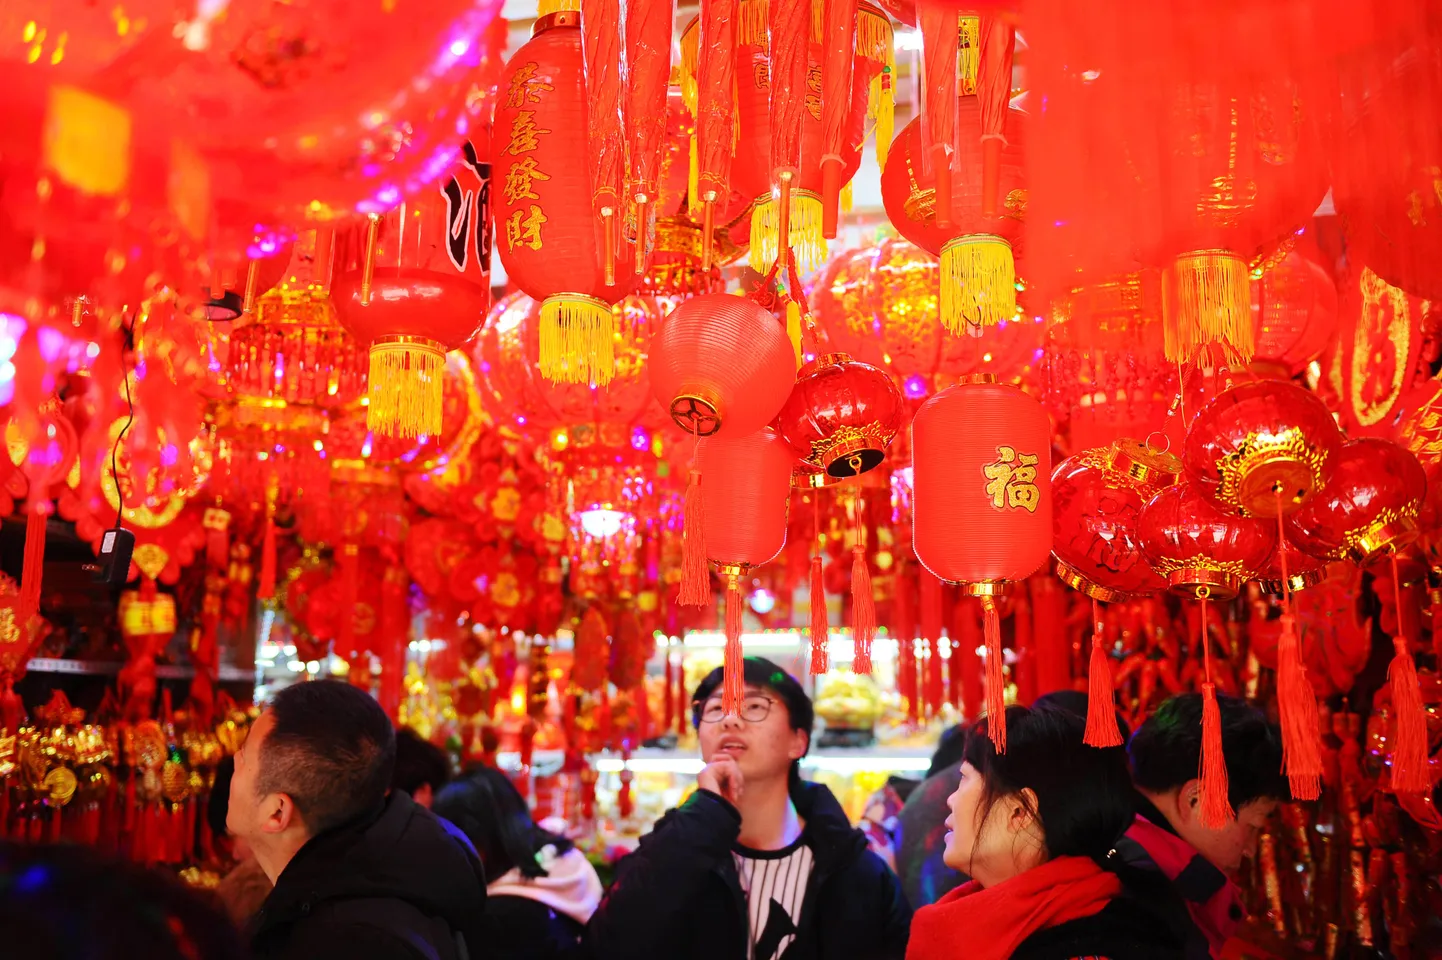 Hiina uusaasta tähistamise juurde kuuluvad ka Hiina laternad.